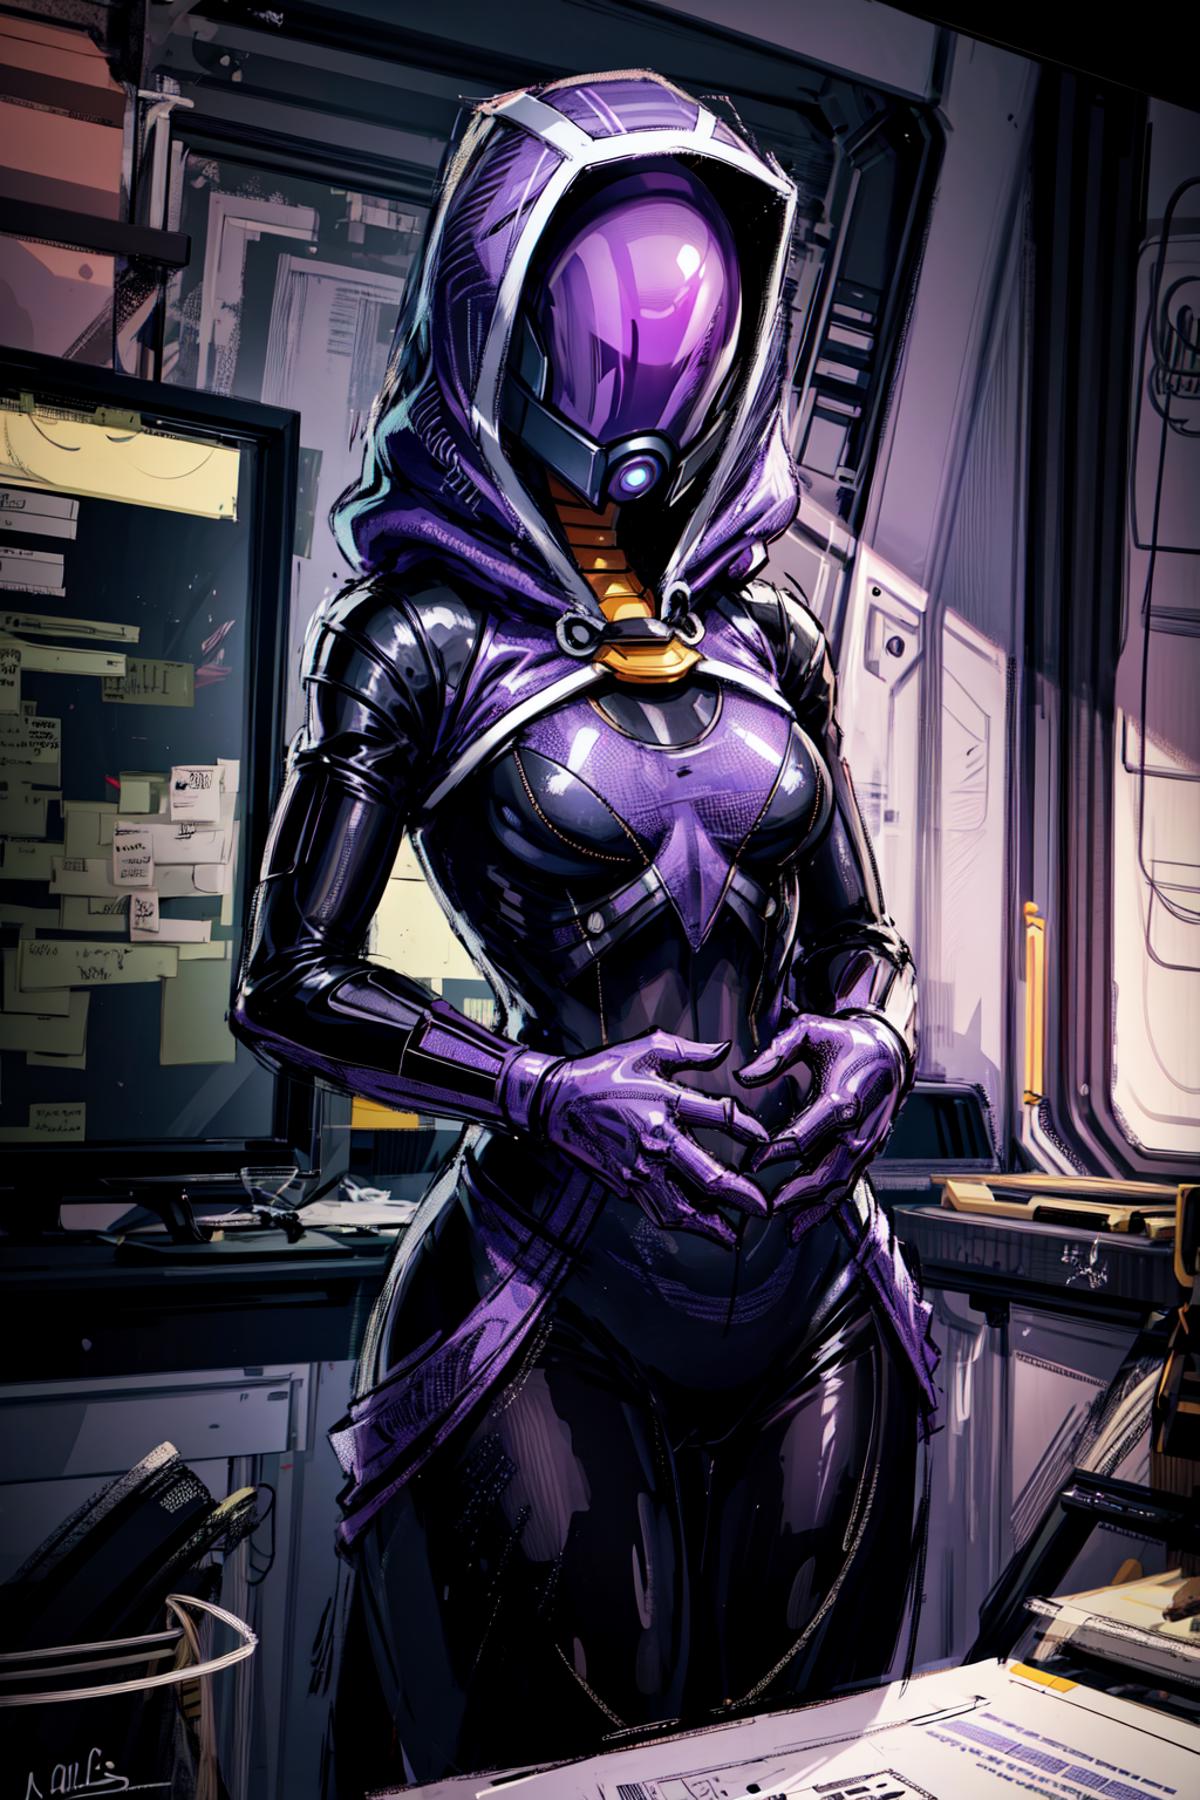 Tali'Zorah - Mass Effect image by Kayako